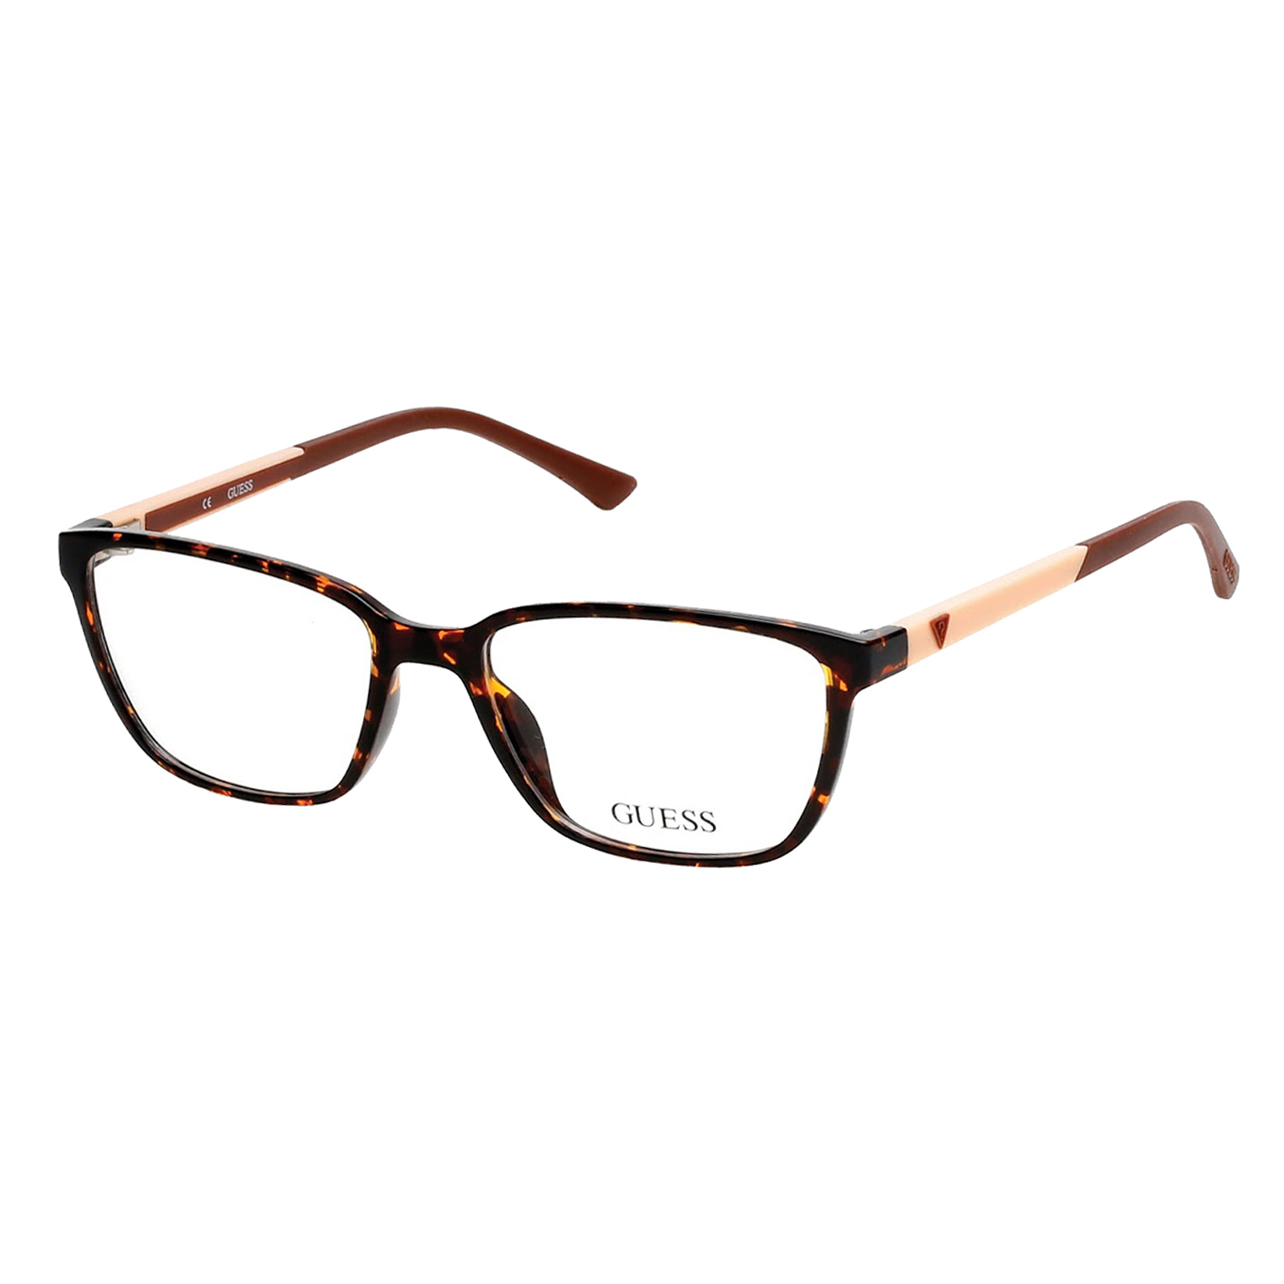 فریم عینک طبی زنانه گس مدل GU249605254 -  - 3